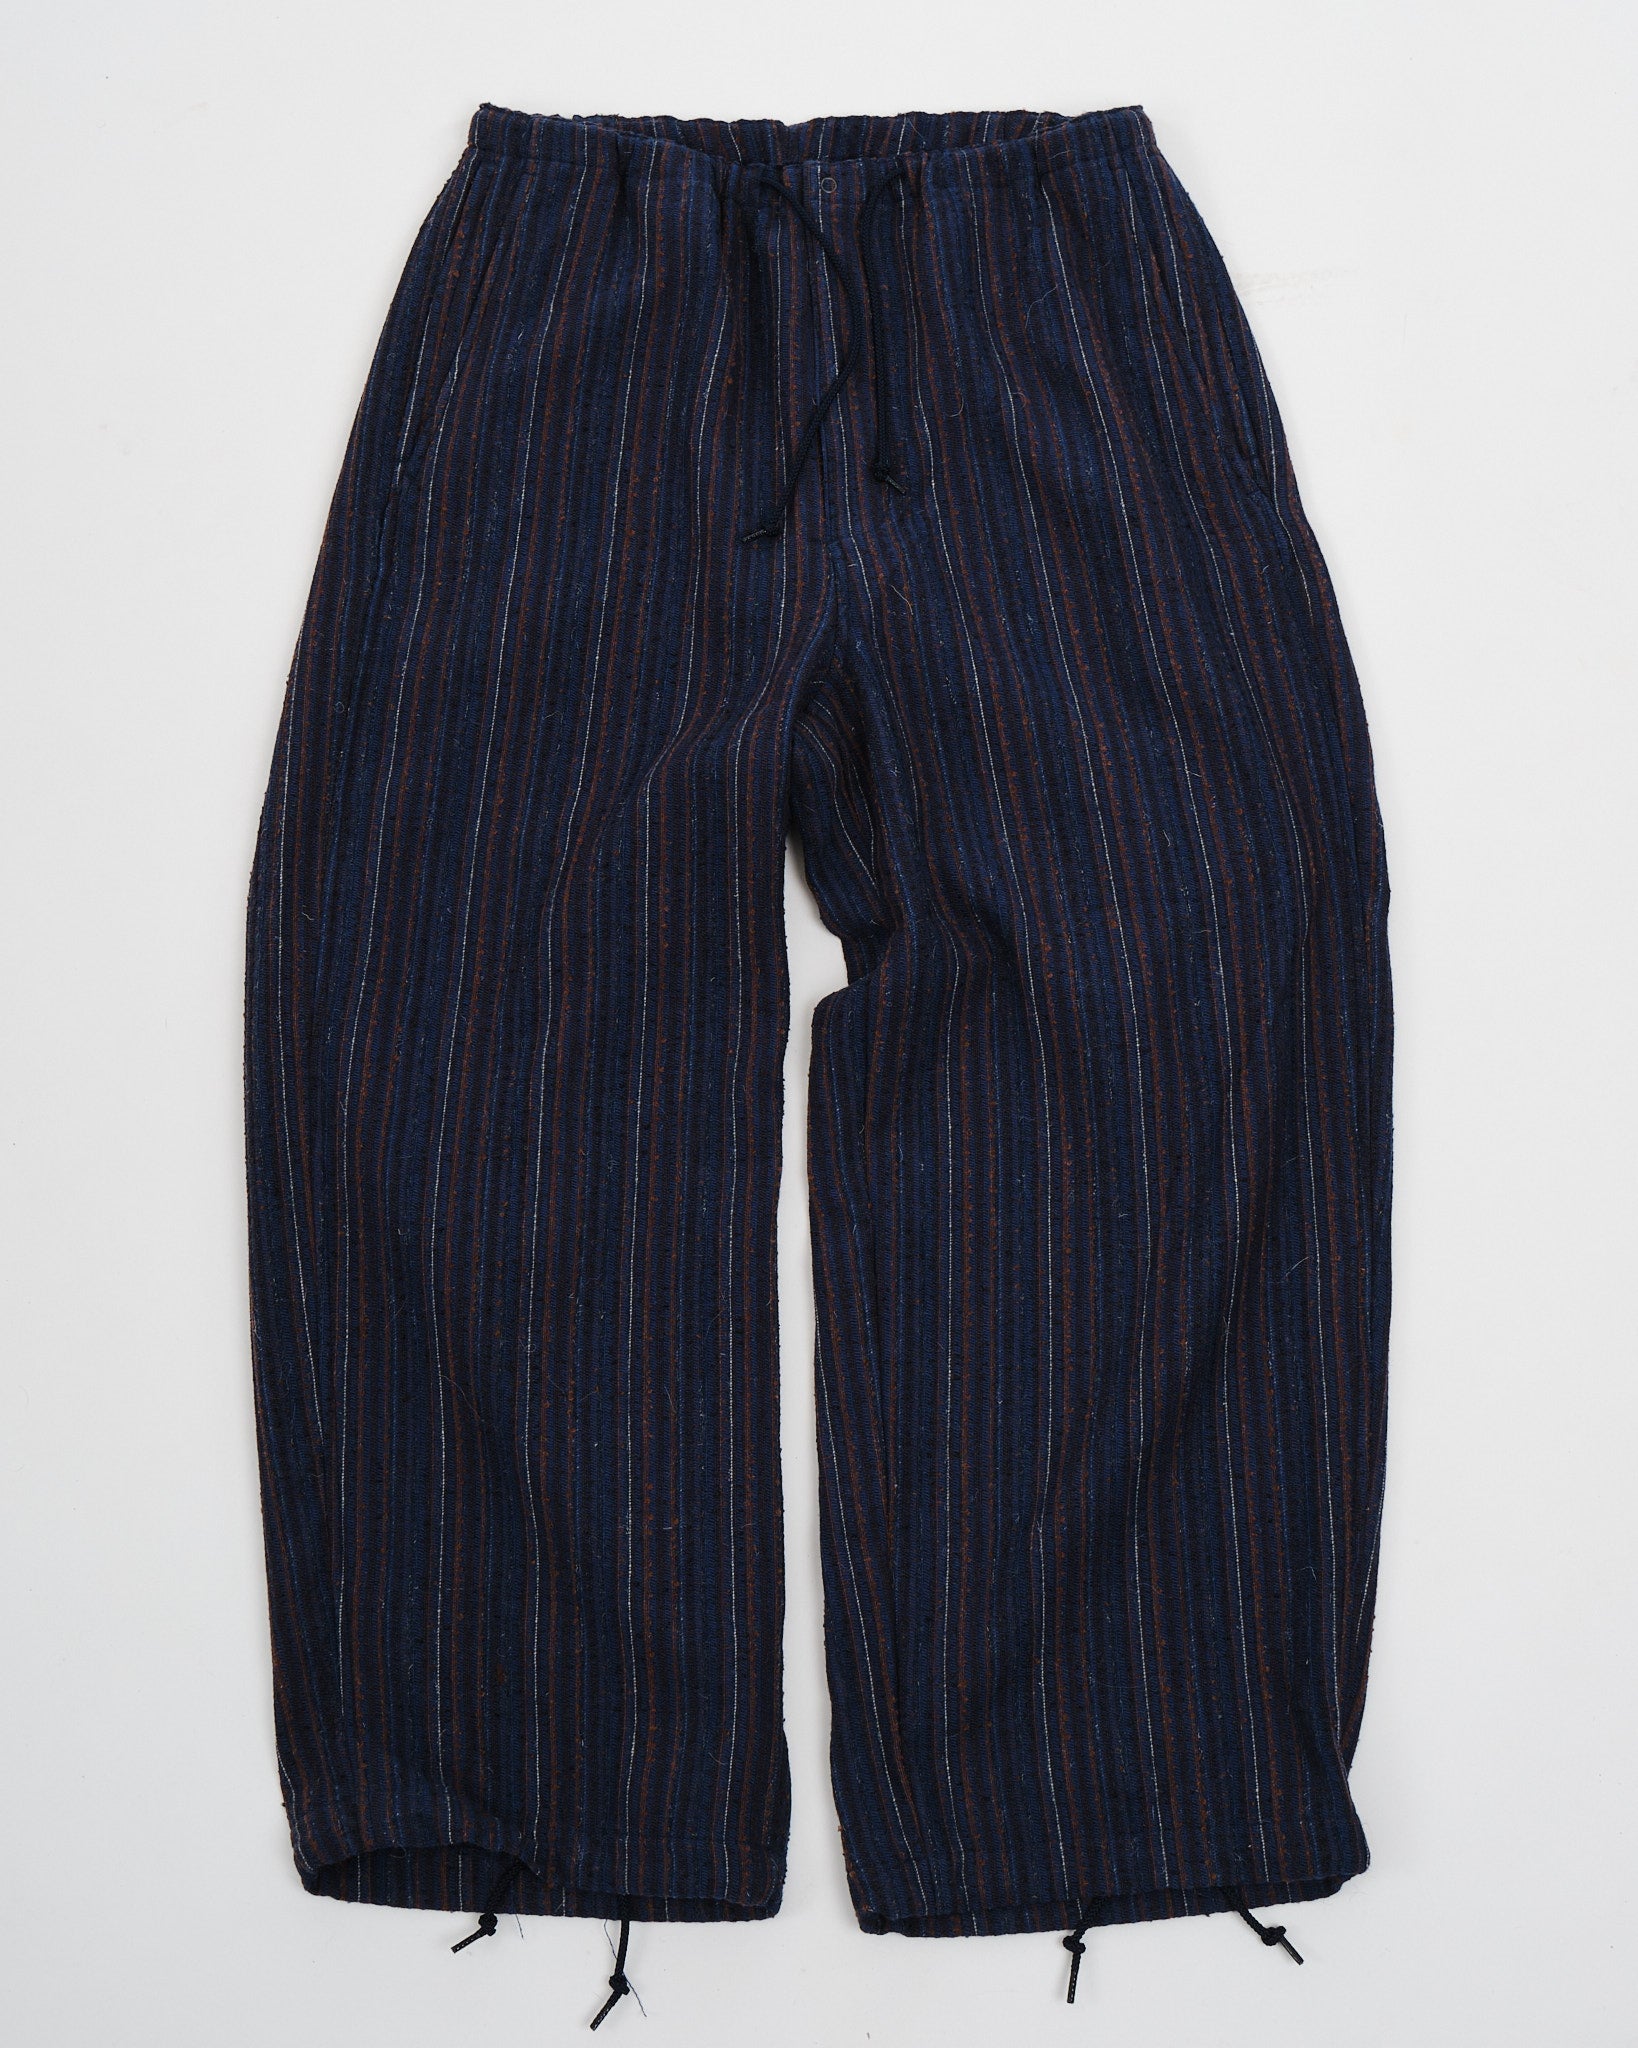 MIL Easy Pants Hickory Tweed Navy